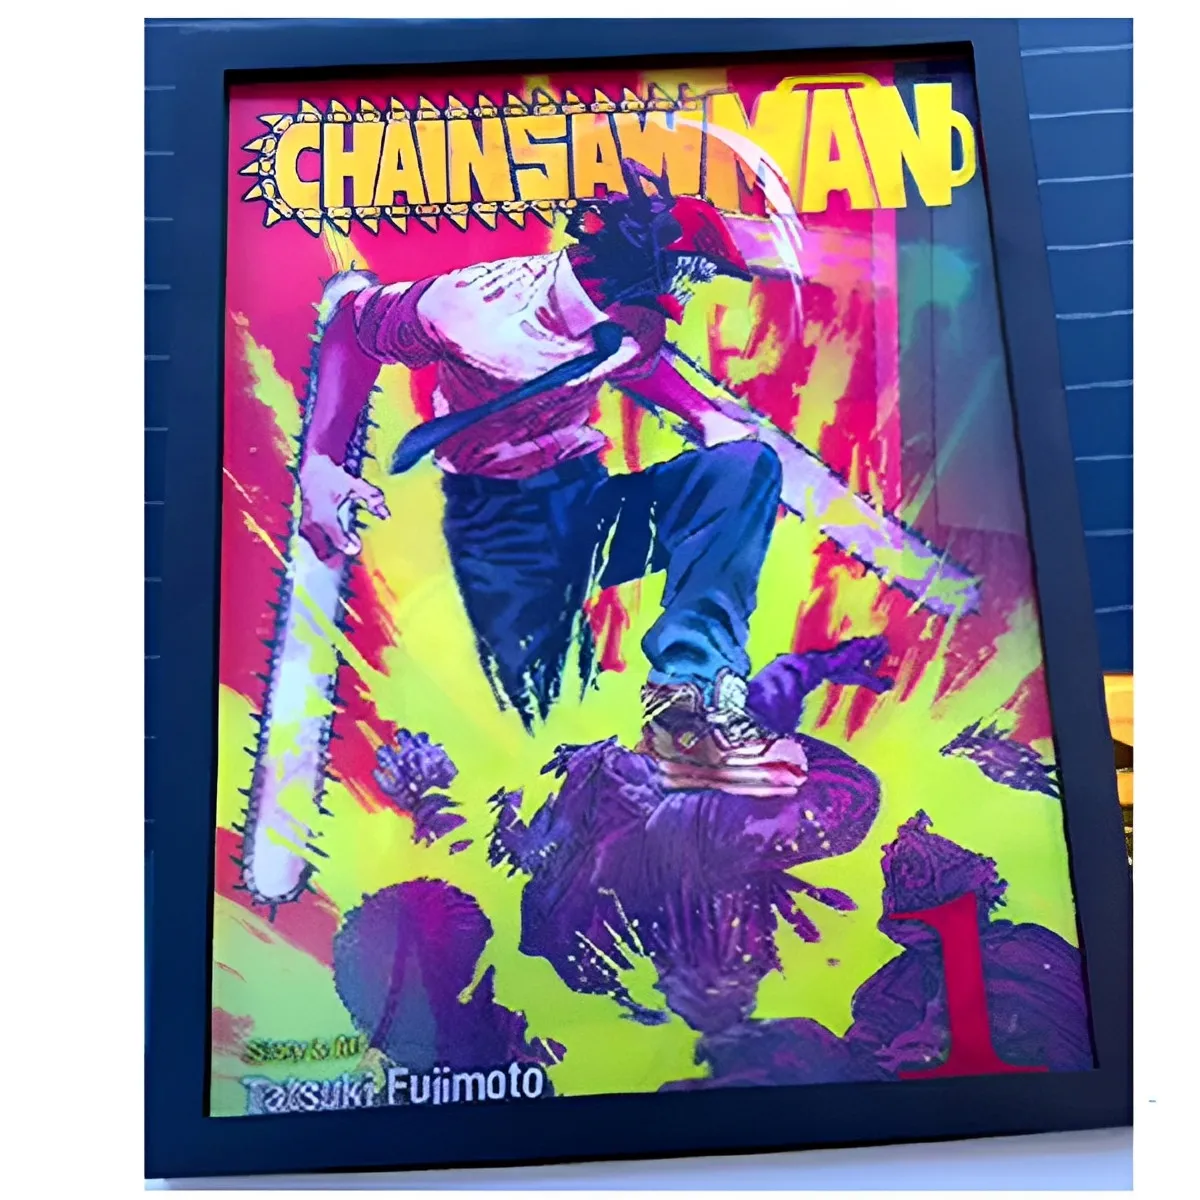 Anime Poster motosega uomo personaggi lenticolari che cambiano immagini Manga Chainsaw Man 3D Flip Poster Wall Decor